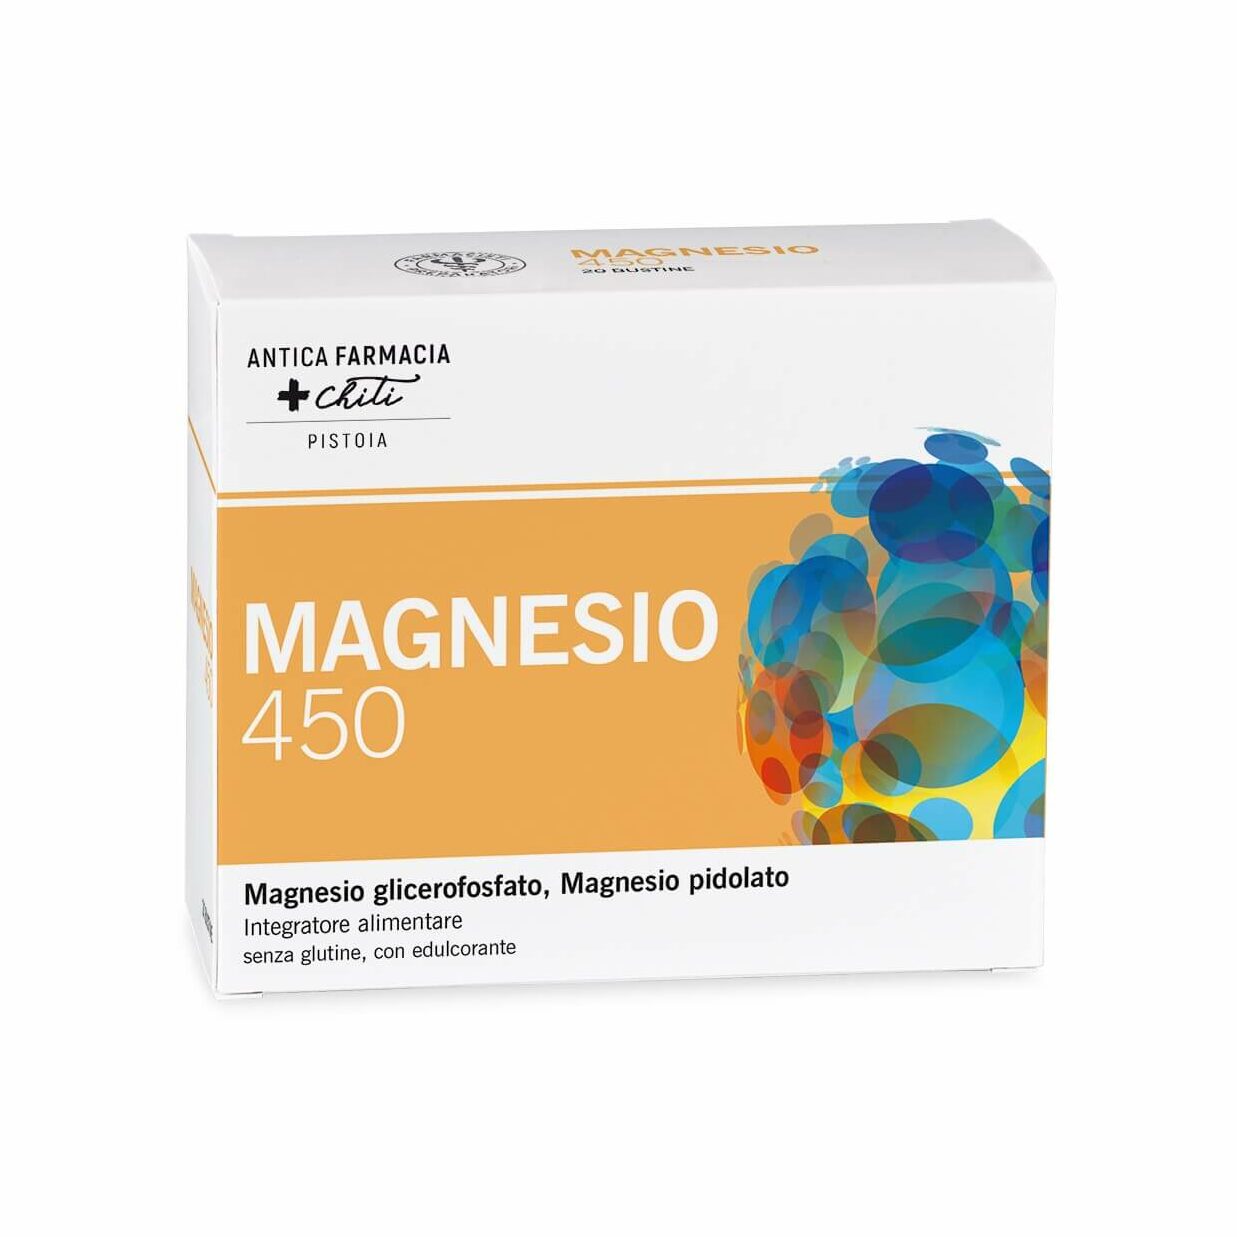 magnesio e1682590767314